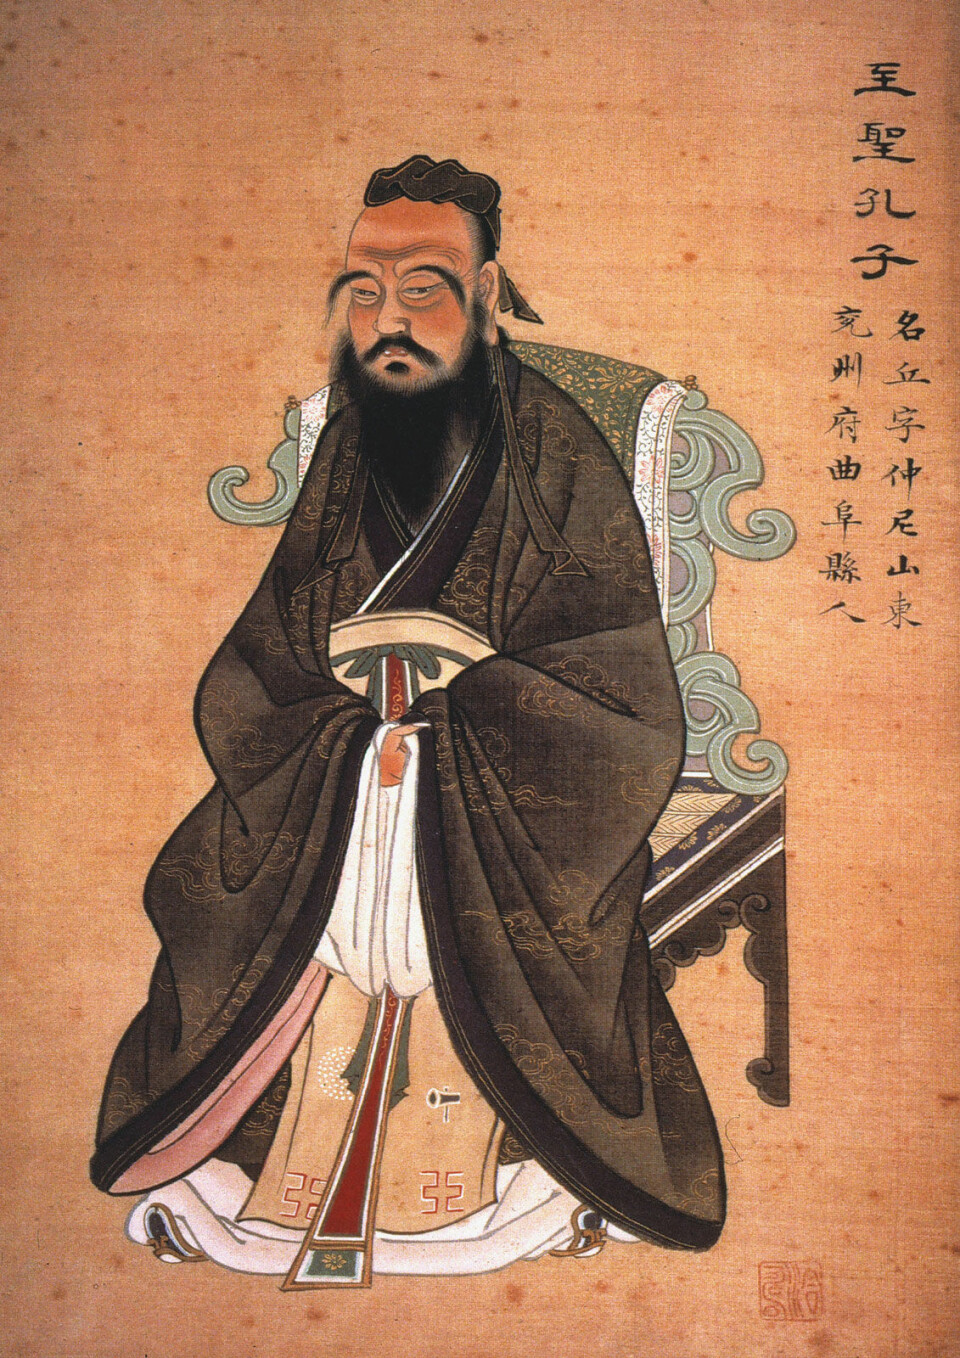 Den kinesiske filosofen Konfucius ble født rundt 550 f.kr. og la grunnlaget for den filosofiske retningen konfutsianisme, som  legger stor vekt på respekt for autoritet og hierarki. (Foto: (Illustrasjon: The Granger Collection))